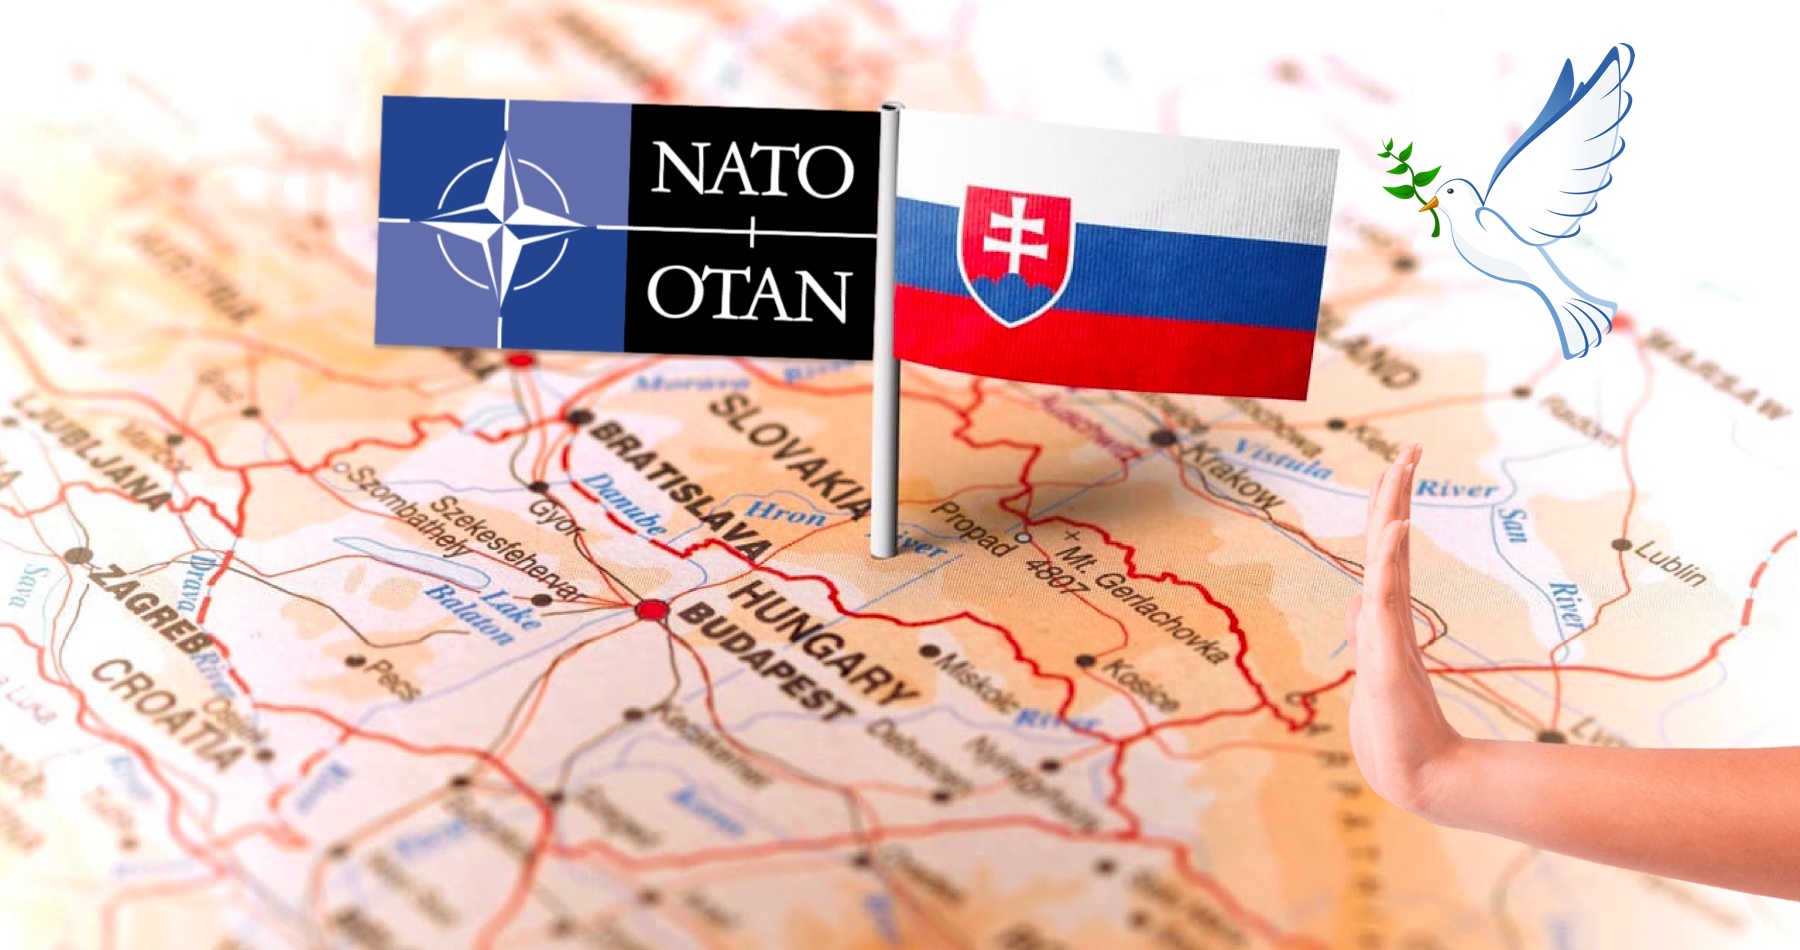 Prieskum: Väčšina Slovákov nedôveruje NATO